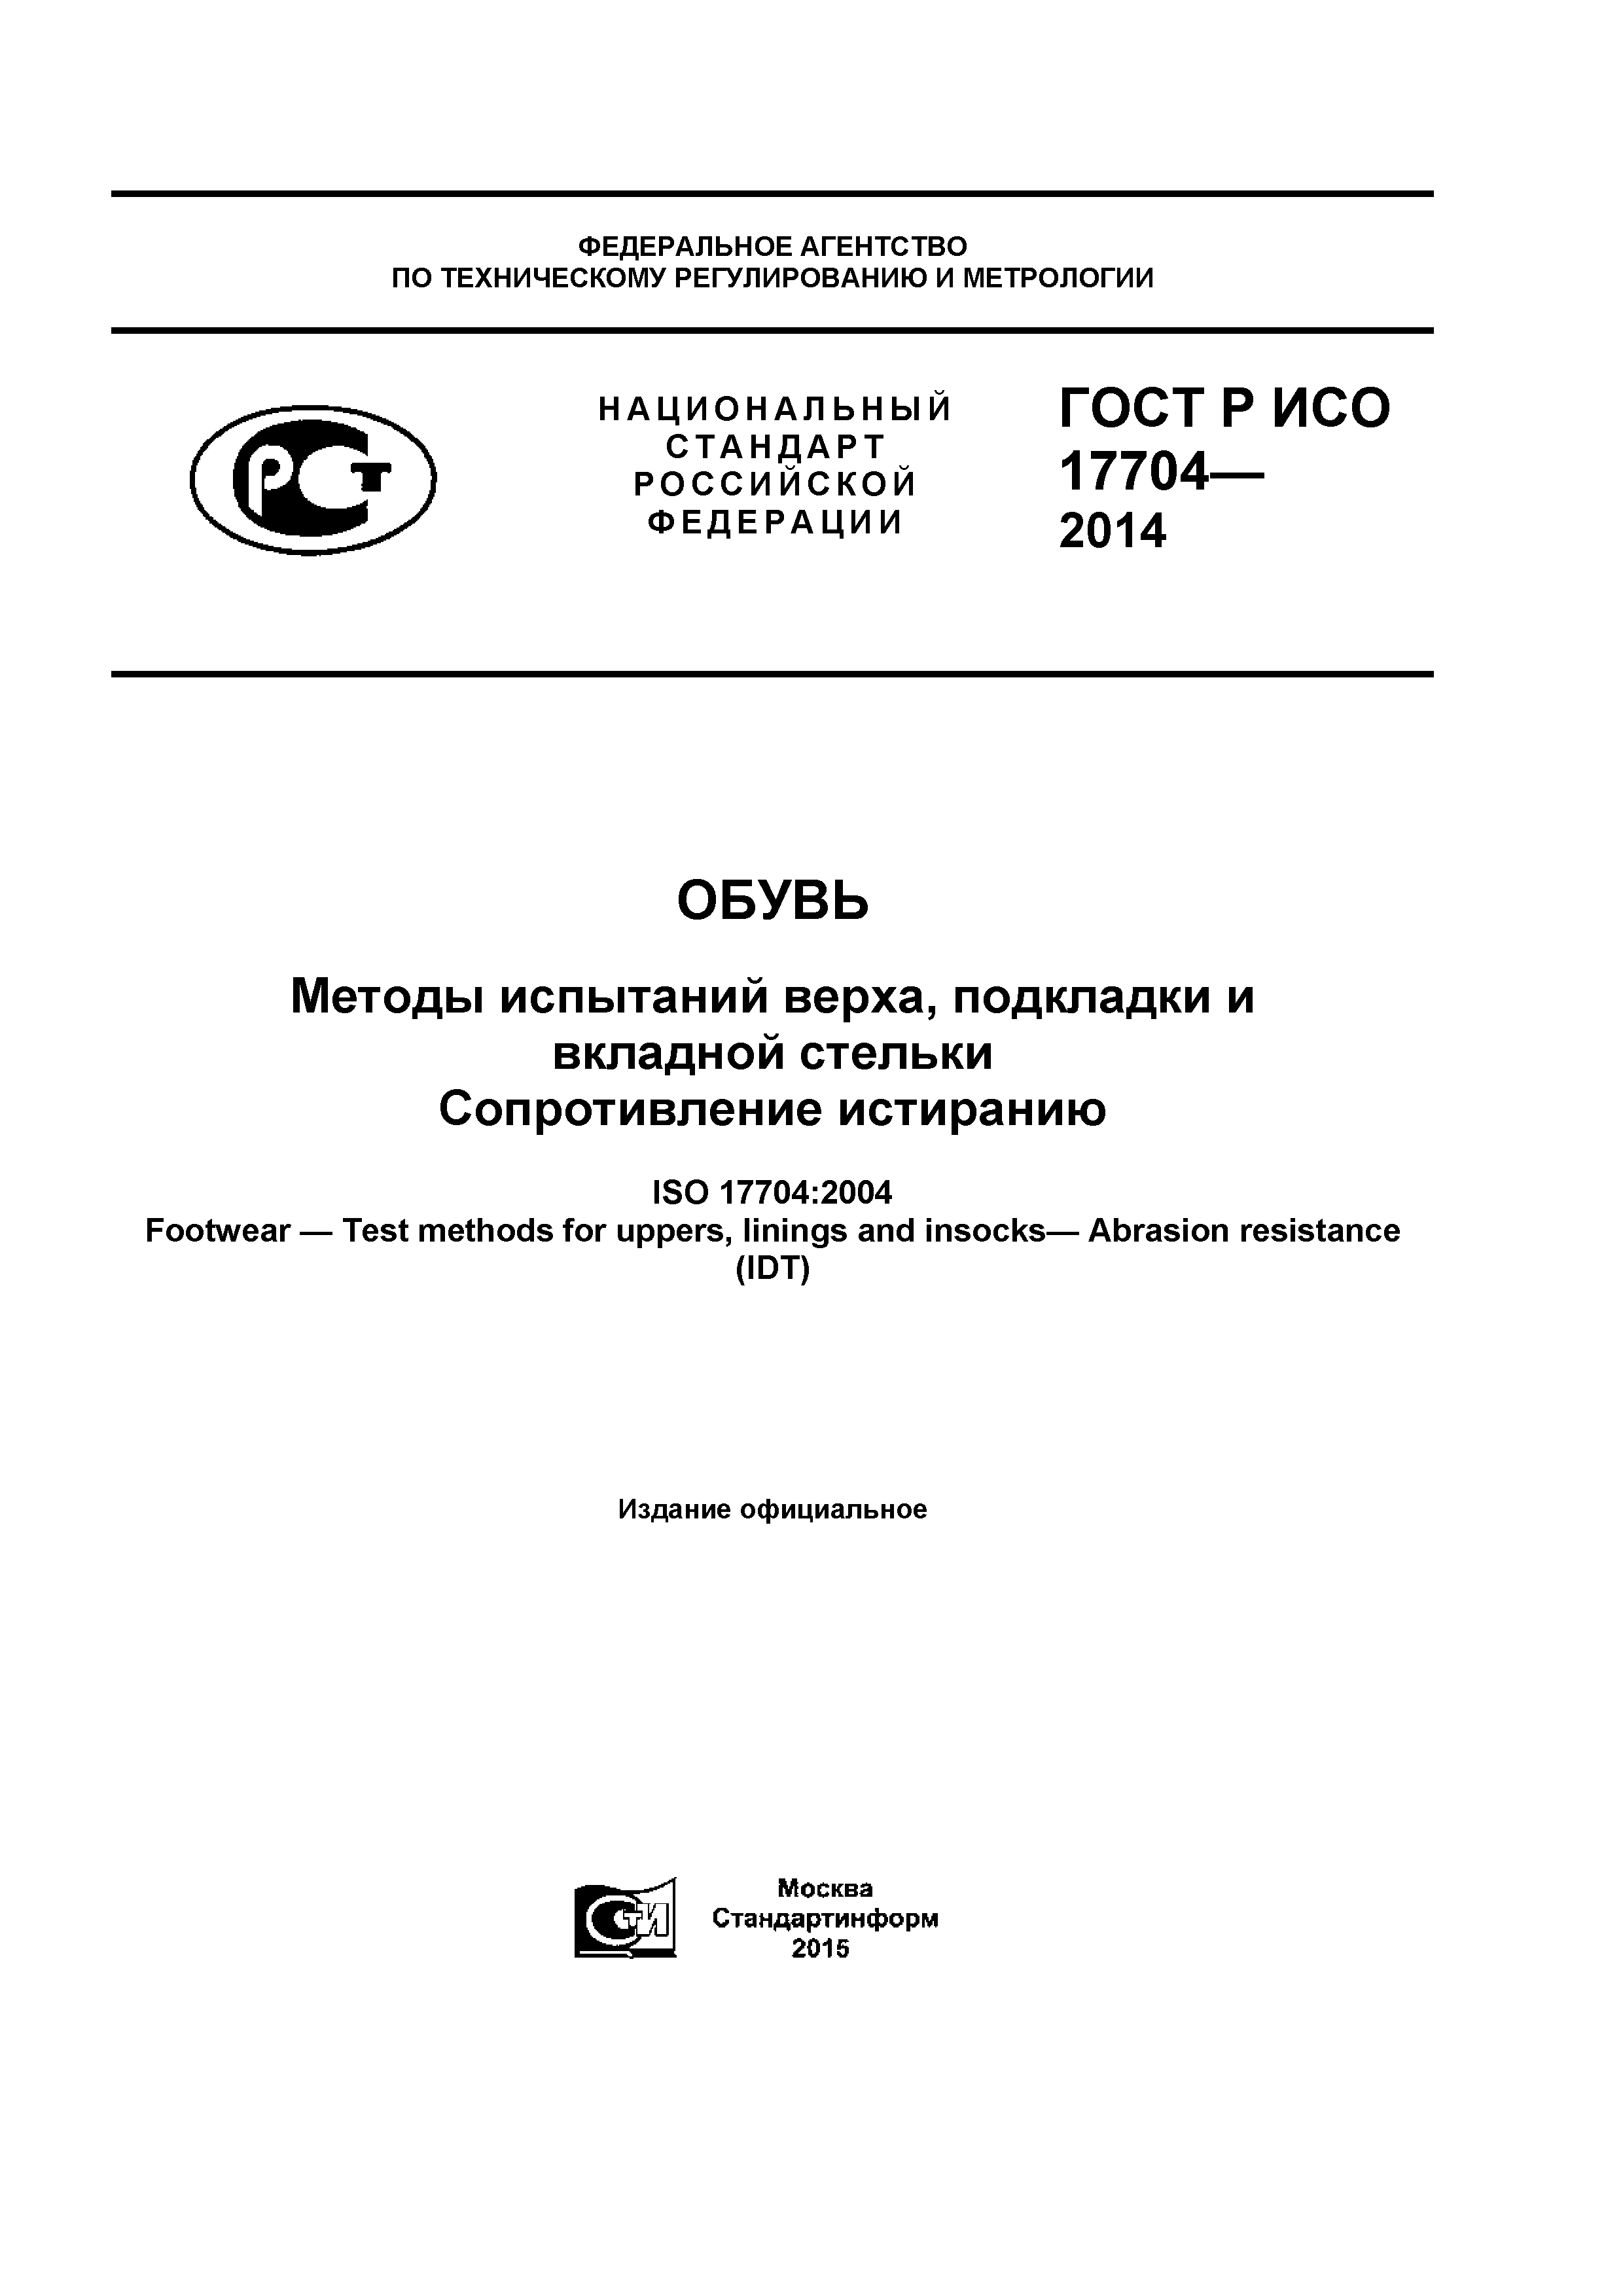 ГОСТ Р ИСО 17704-2014